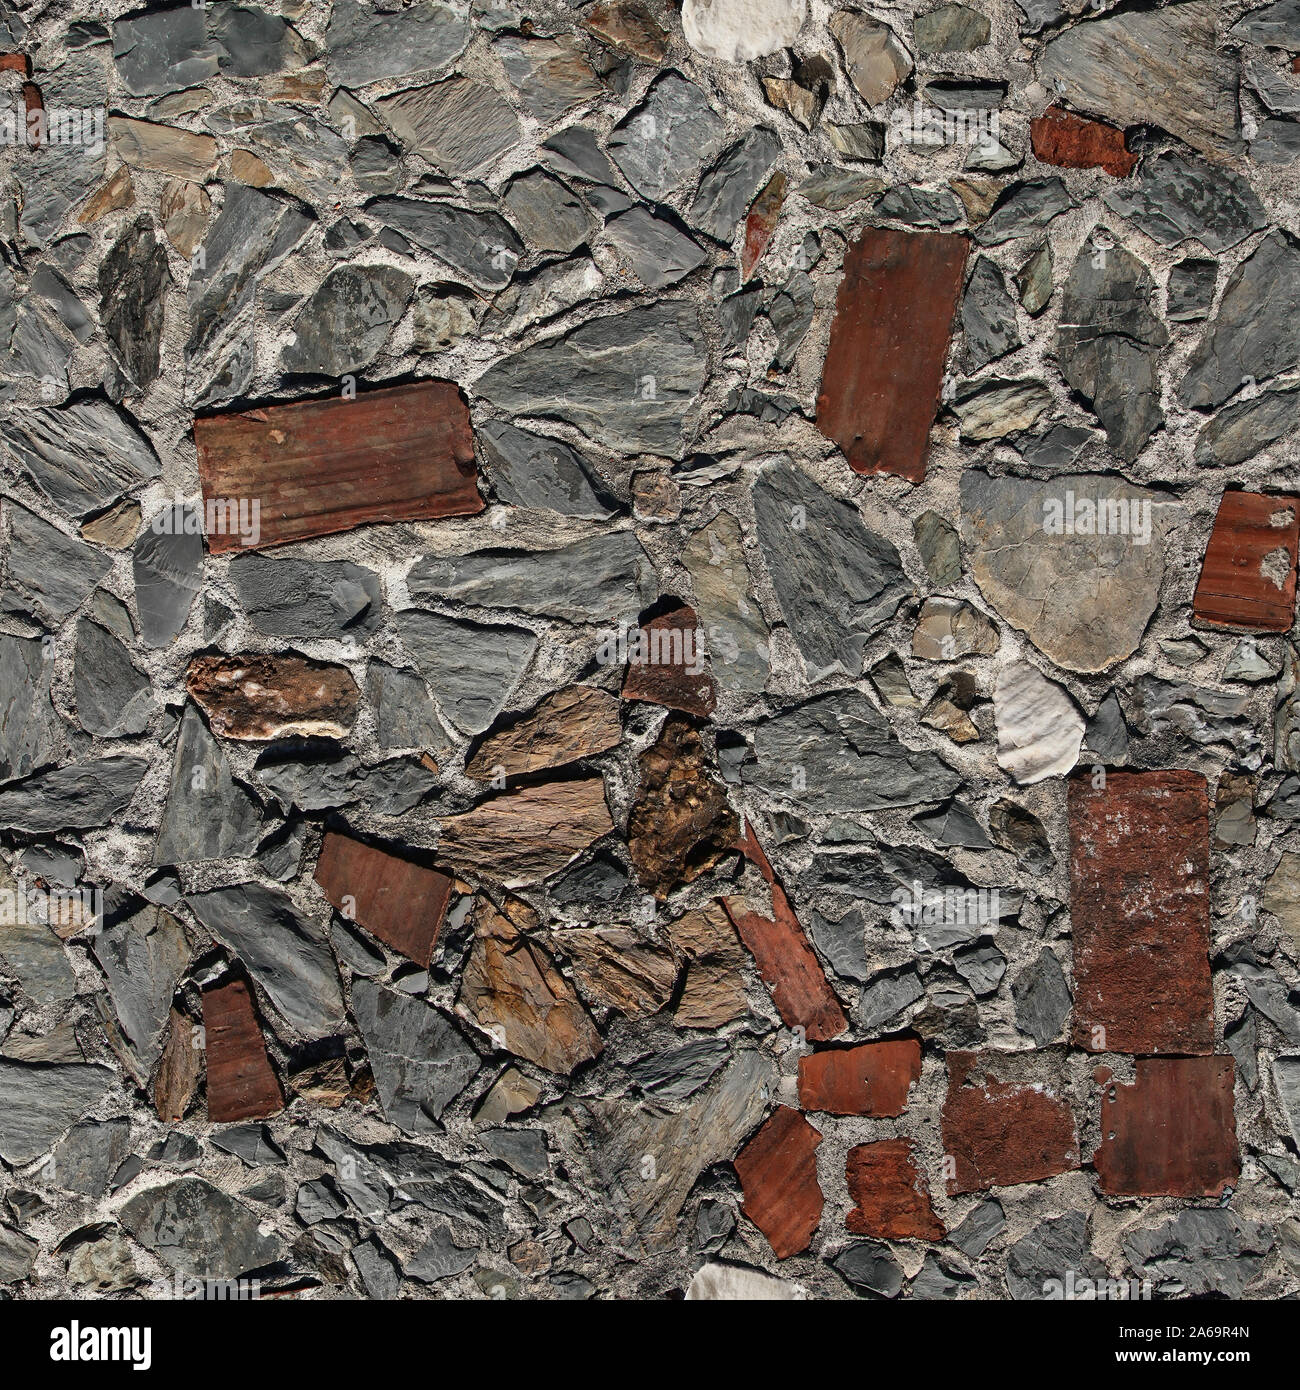 Seamless texture de pavage trottoir faites de morceaux de pierre empilées au hasard et carreaux de céramique. Pise. L'Italie. Banque D'Images